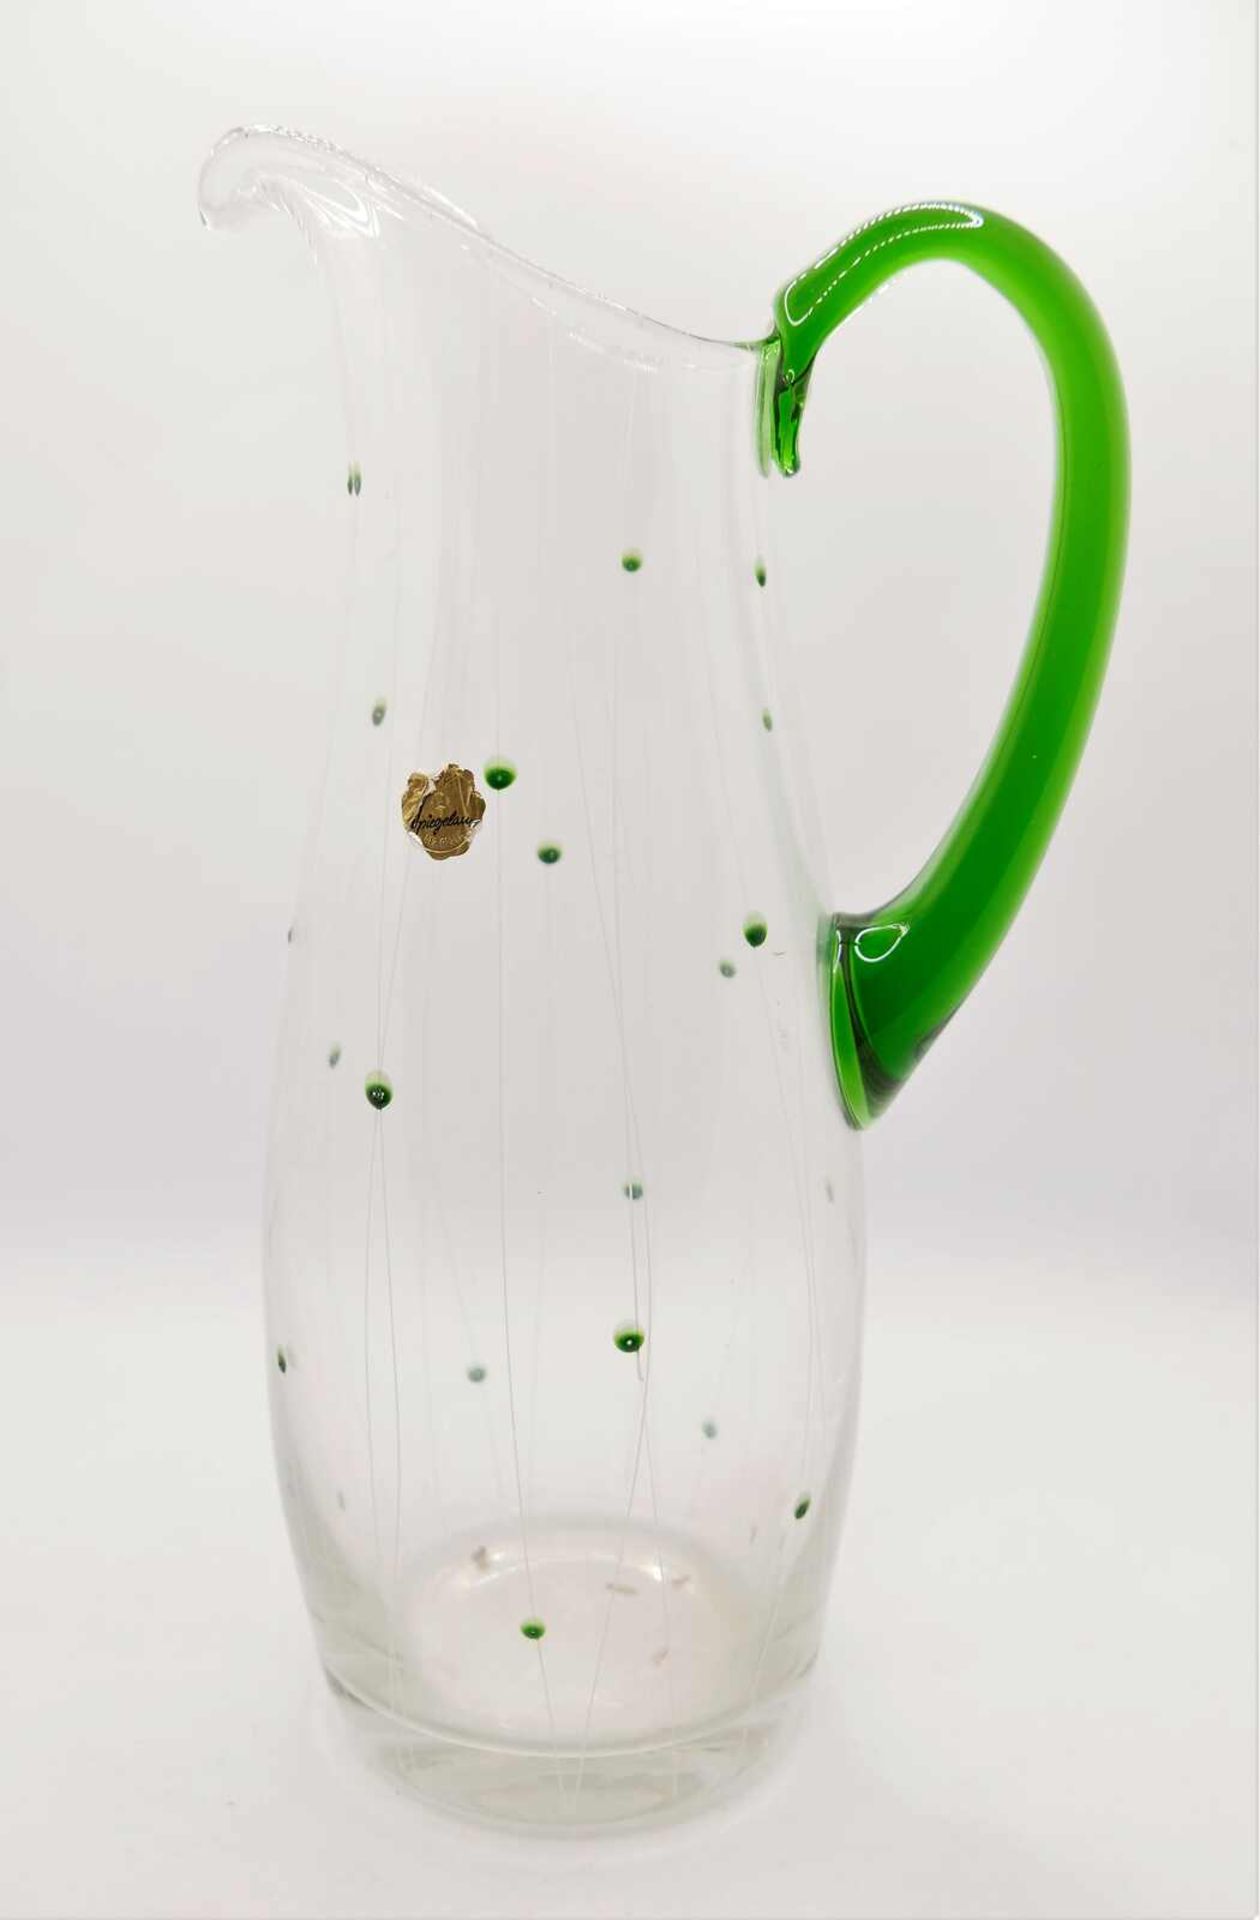 Saftkrug aus Glas im Jugendstil, bayrischer Wald. Mit Aufkleber "Spiegelau". Höhe ca. 28 cmJuice j